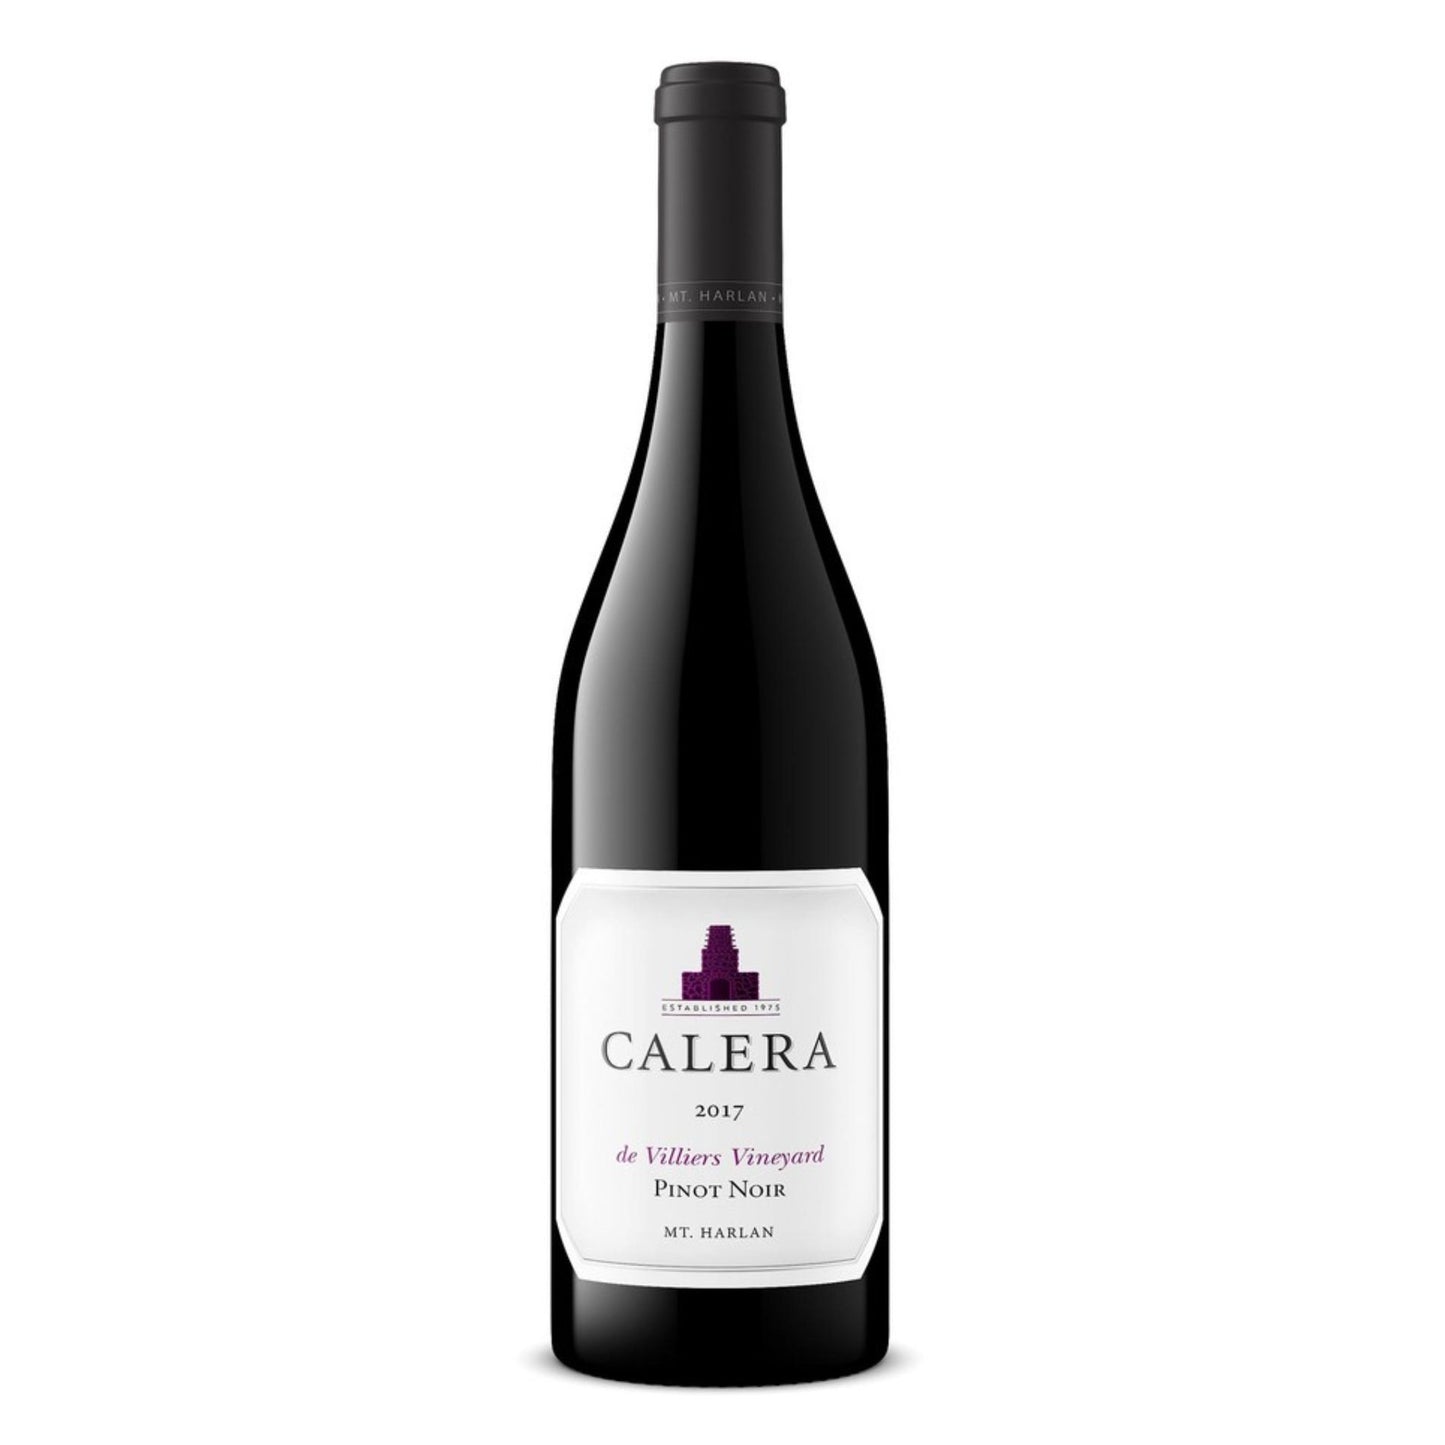 Calera de Villiers Vineyard Pinot Noir, Mount Harlan, USA,2017